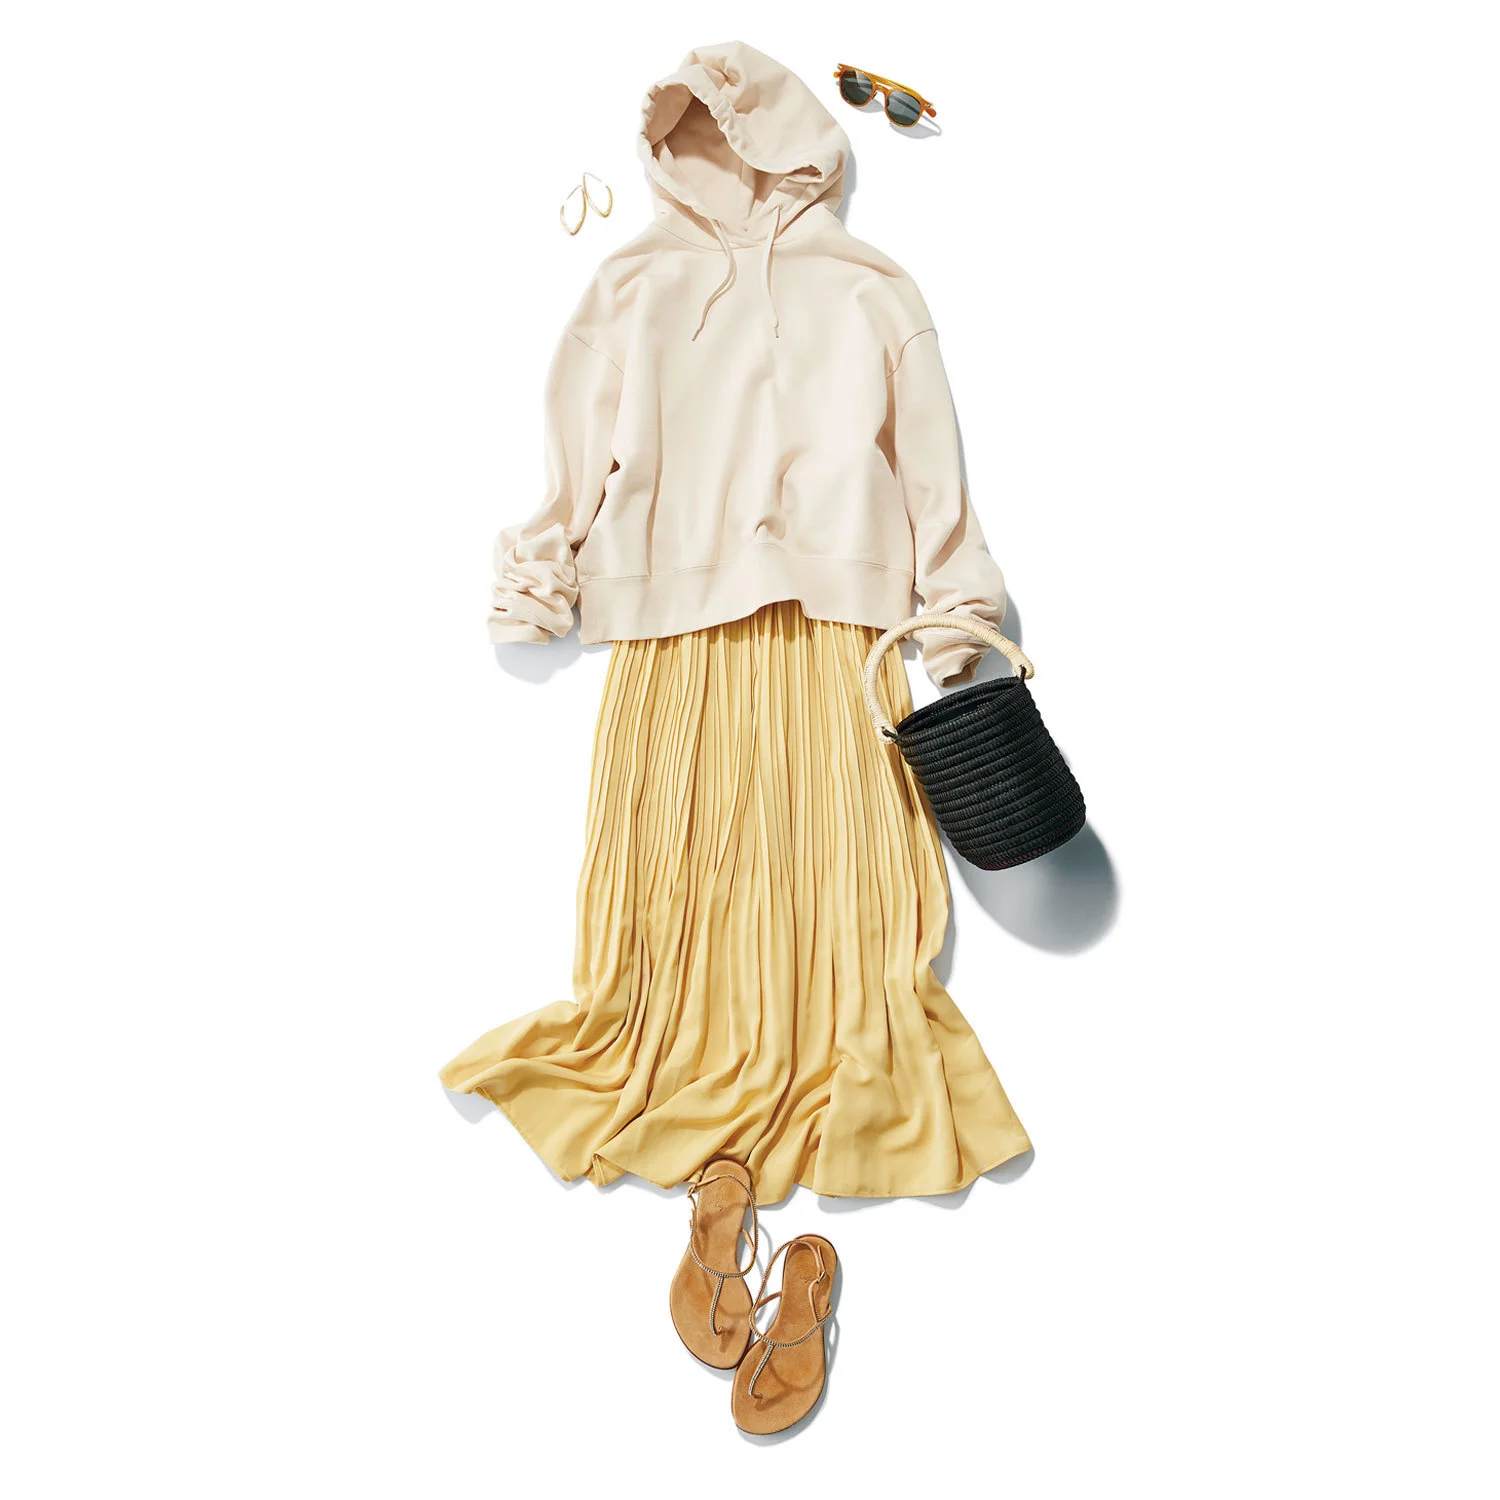 理想をかなえる大人のためのスカートコーデまとめ|40代夏ファッション